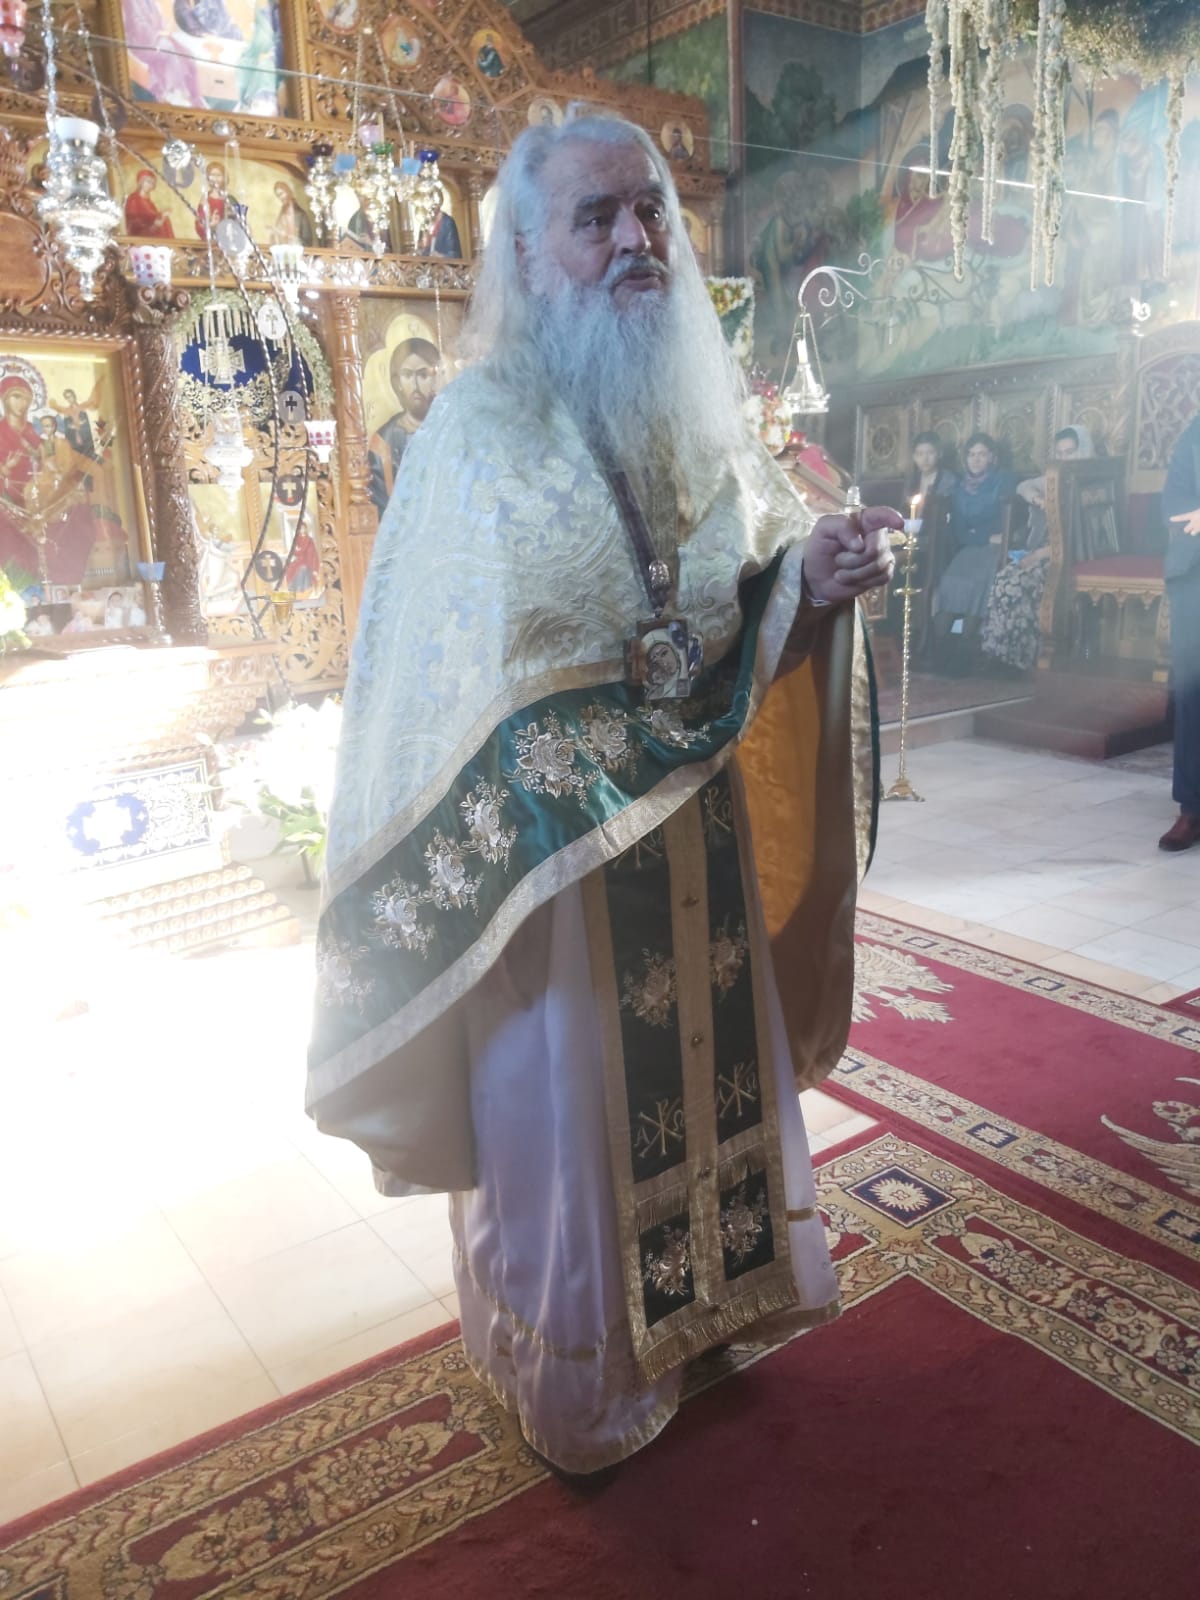 Părintele Petru Vamvulescu, un fiu duhovnicesc al Sfântului Arsenie Boca, a trecut la cele veșnice. Priveghiul va avea loc sâmbătă la Ocna Sibiului